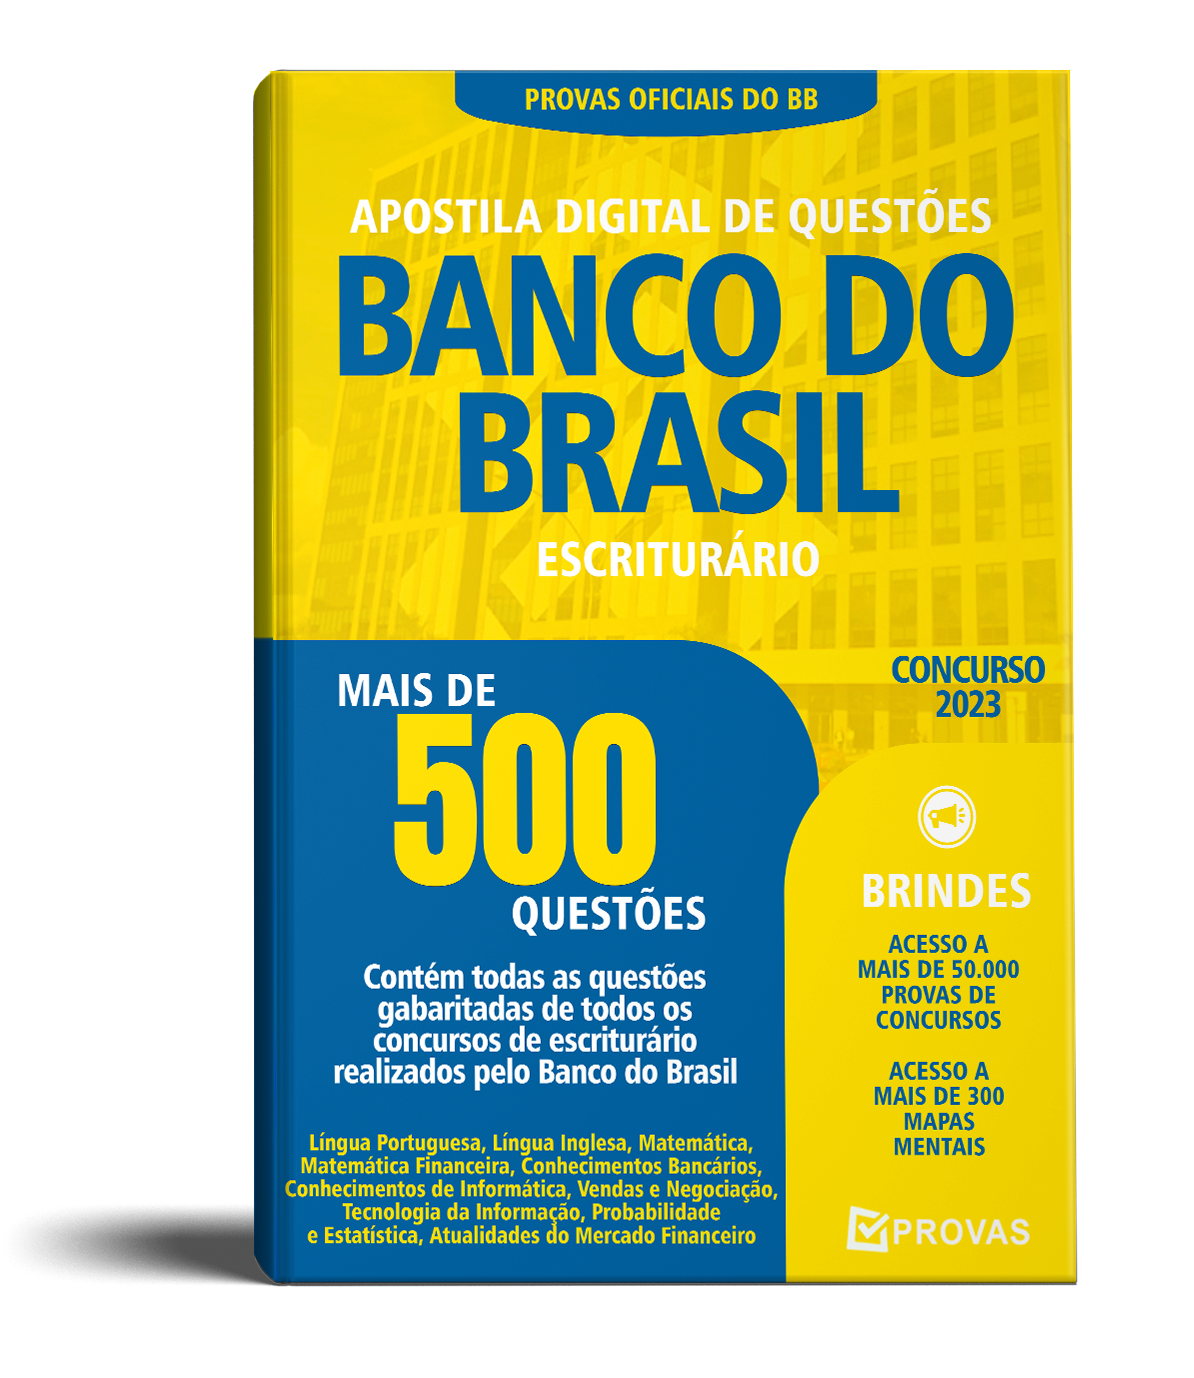 Comercial Brasil 500